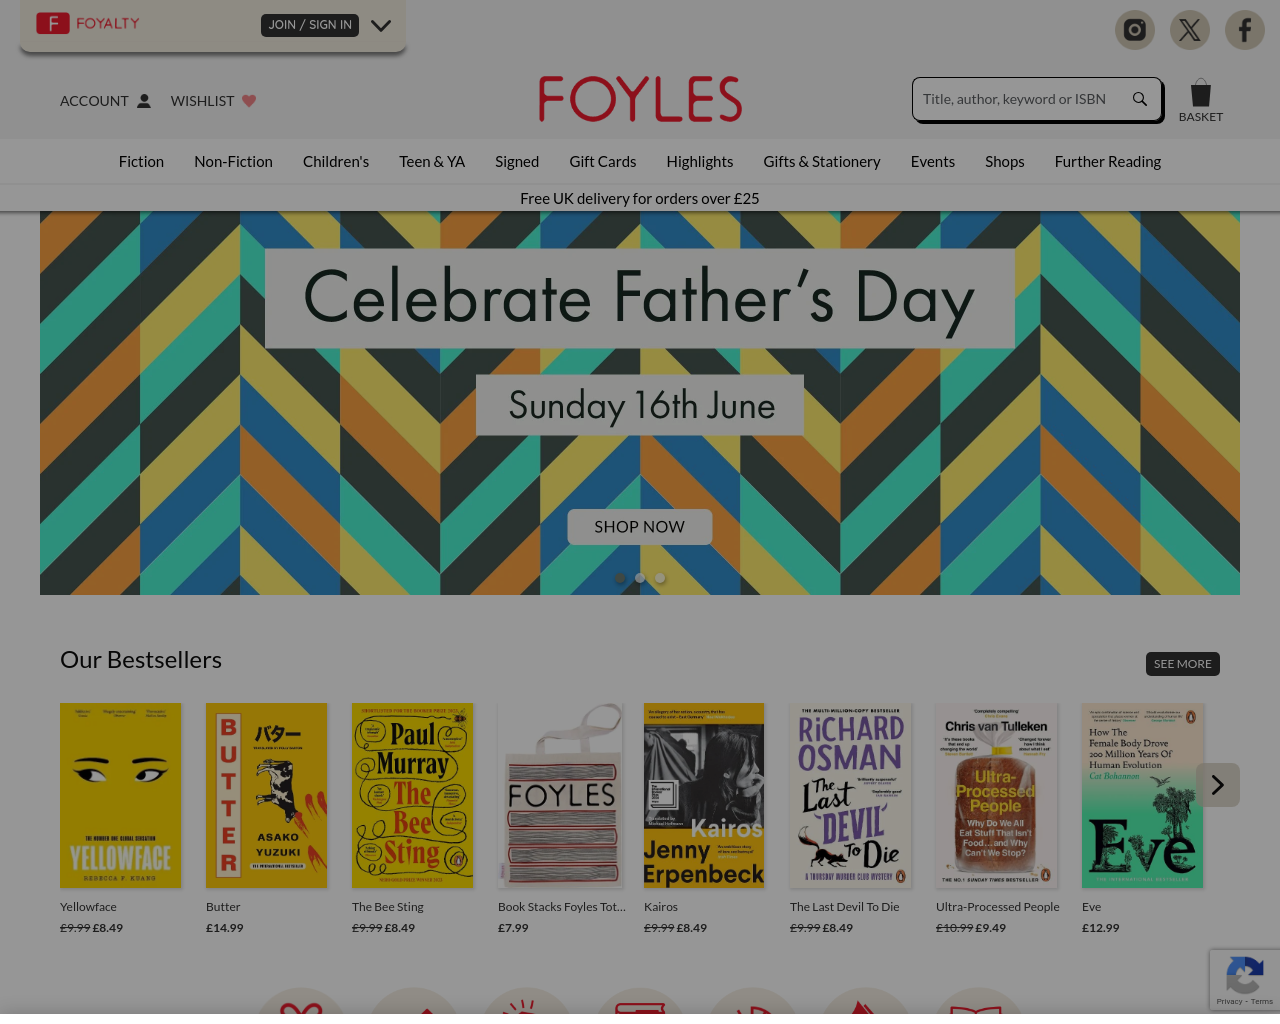 foyles.co.uk